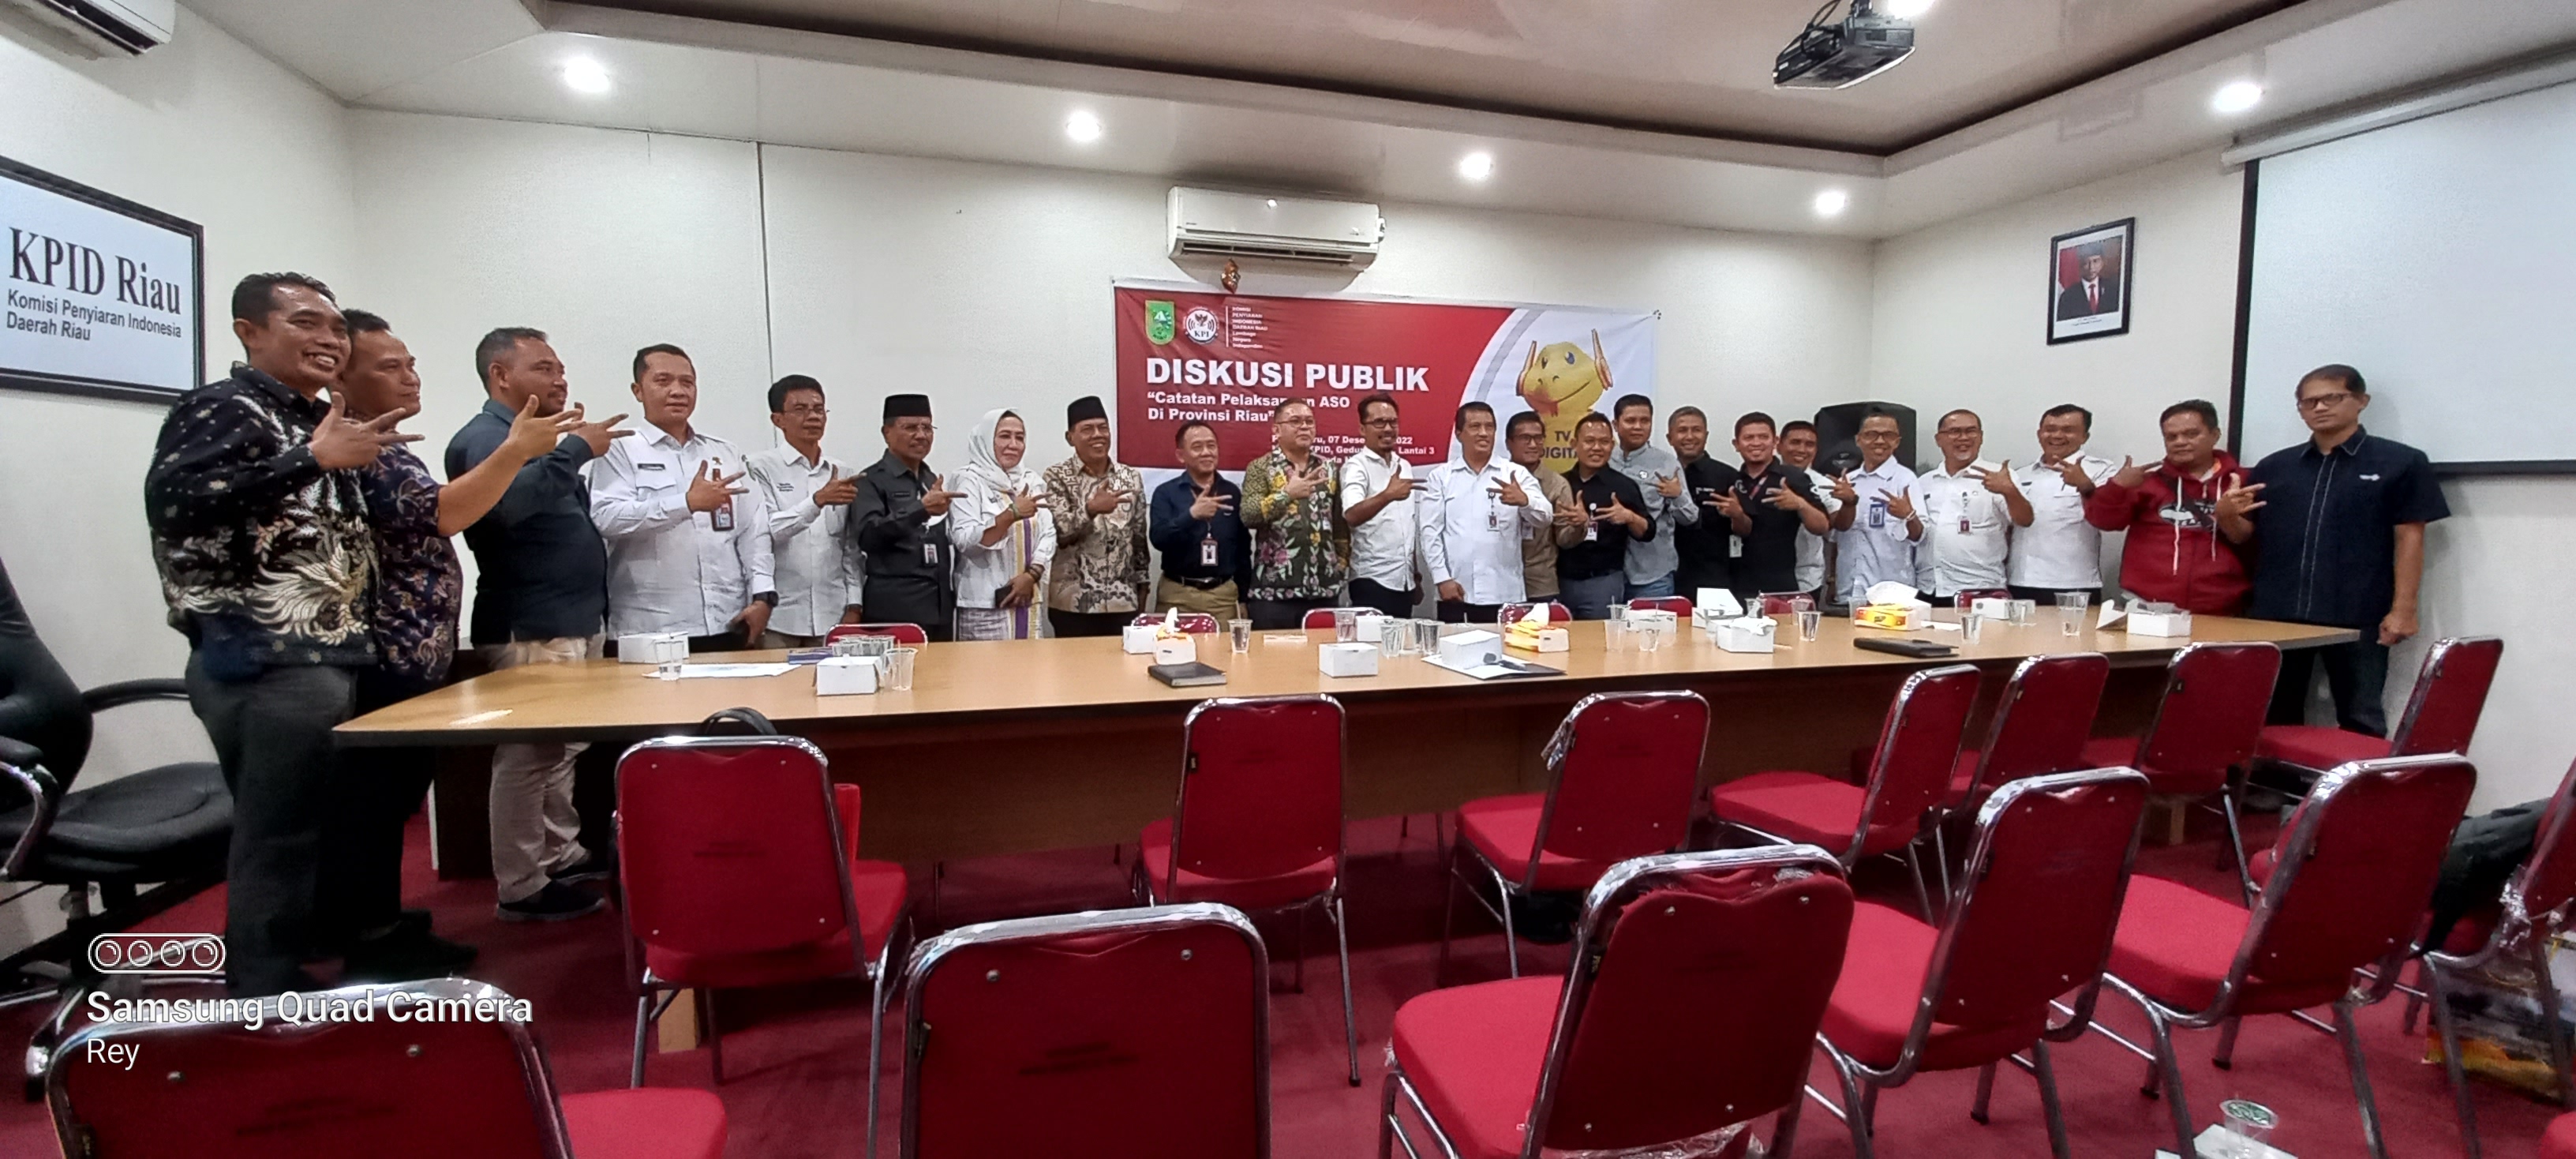 Migrasi TV Analog ke Digital di Riau Banyak Kendala